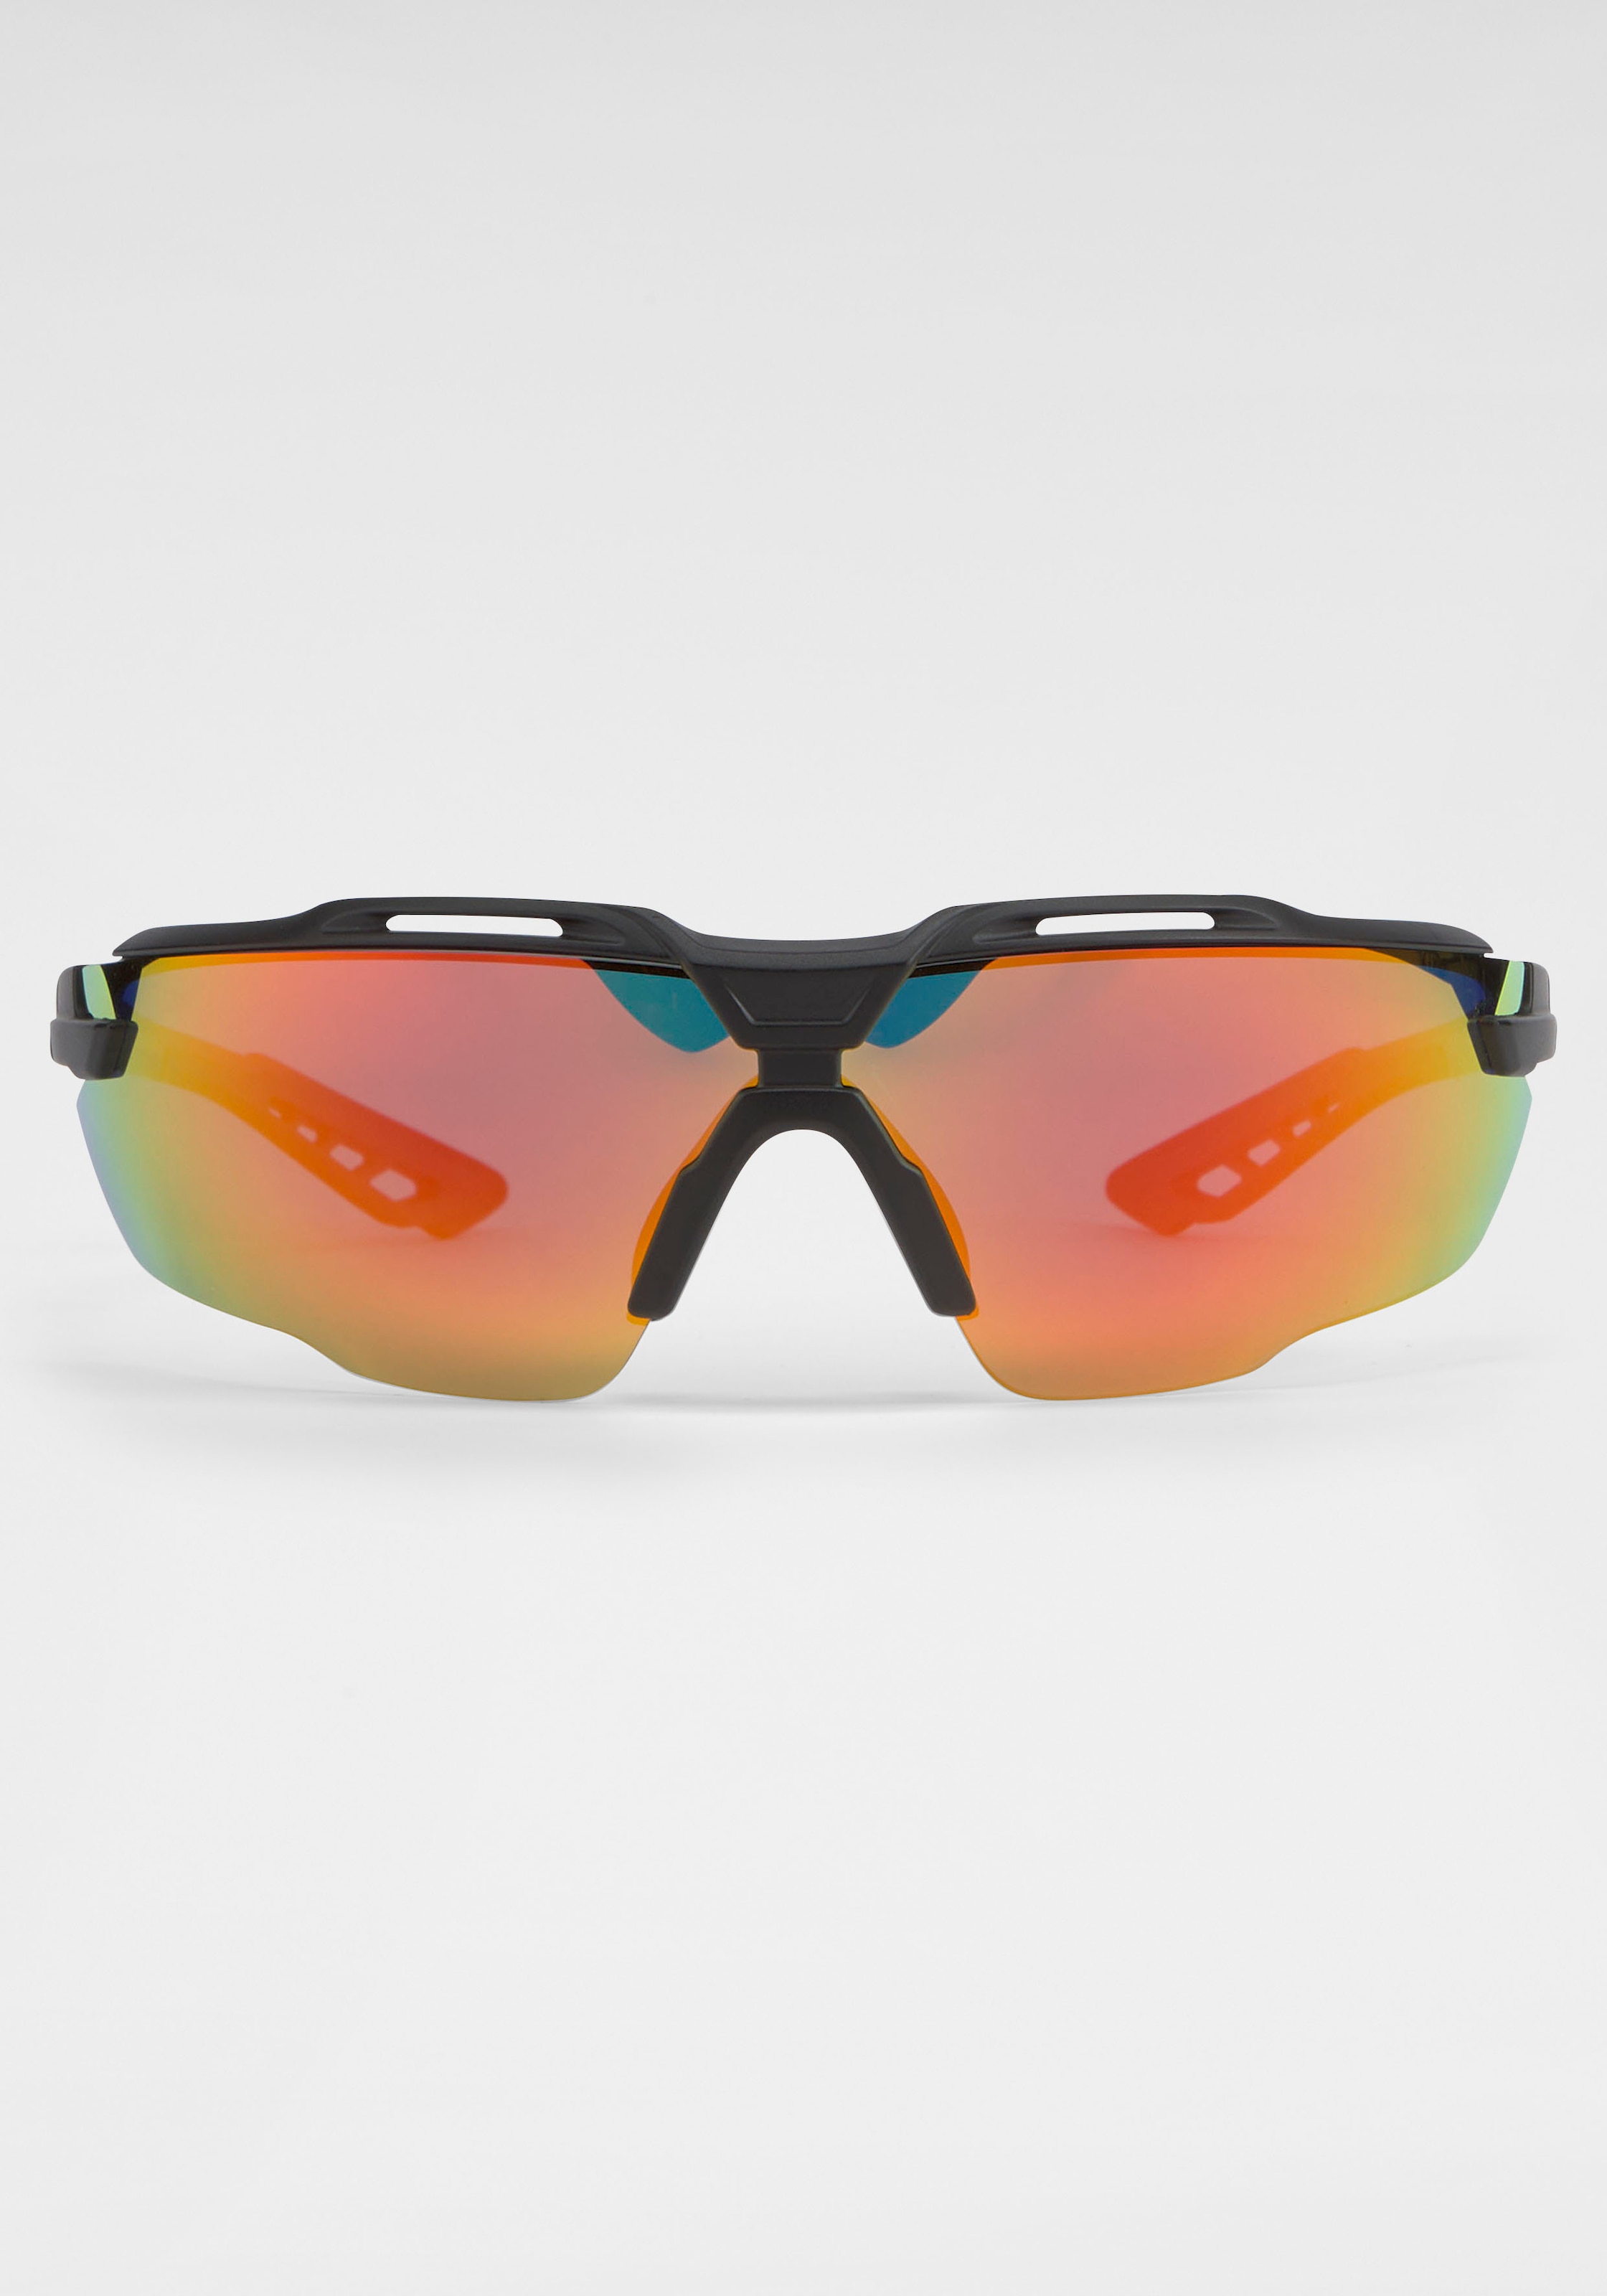 Gläsern online Sonnenbrille, bei Jelmoli-Versand Schweiz BLACK kaufen Eyewear gebogenen mit IN BACK